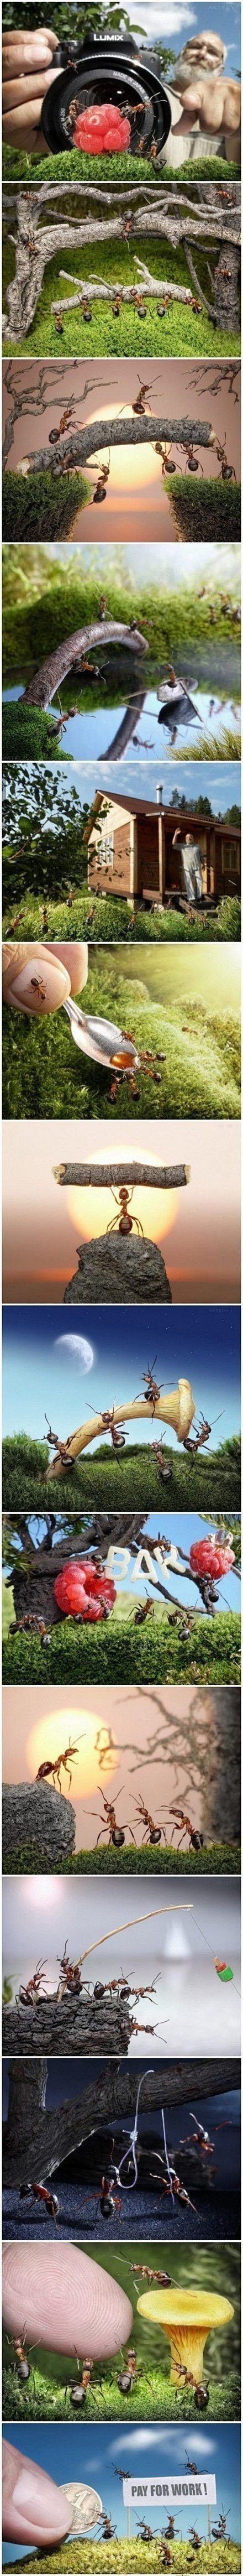 【蚂蚁的故事 】
俄罗斯摄影师花费3年...